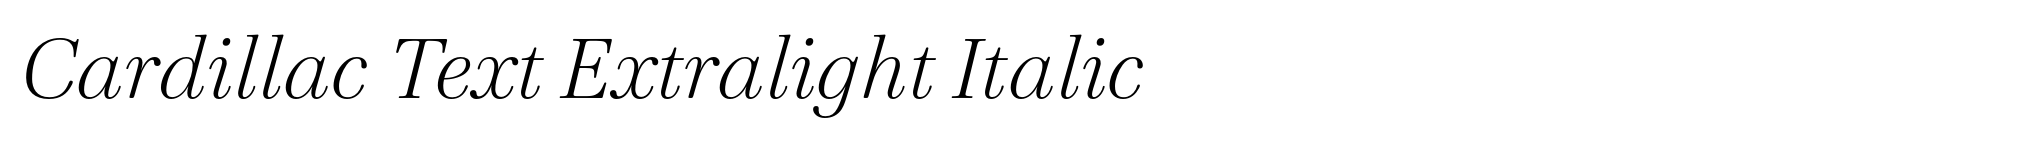 Cardillac Text Extralight Italic image